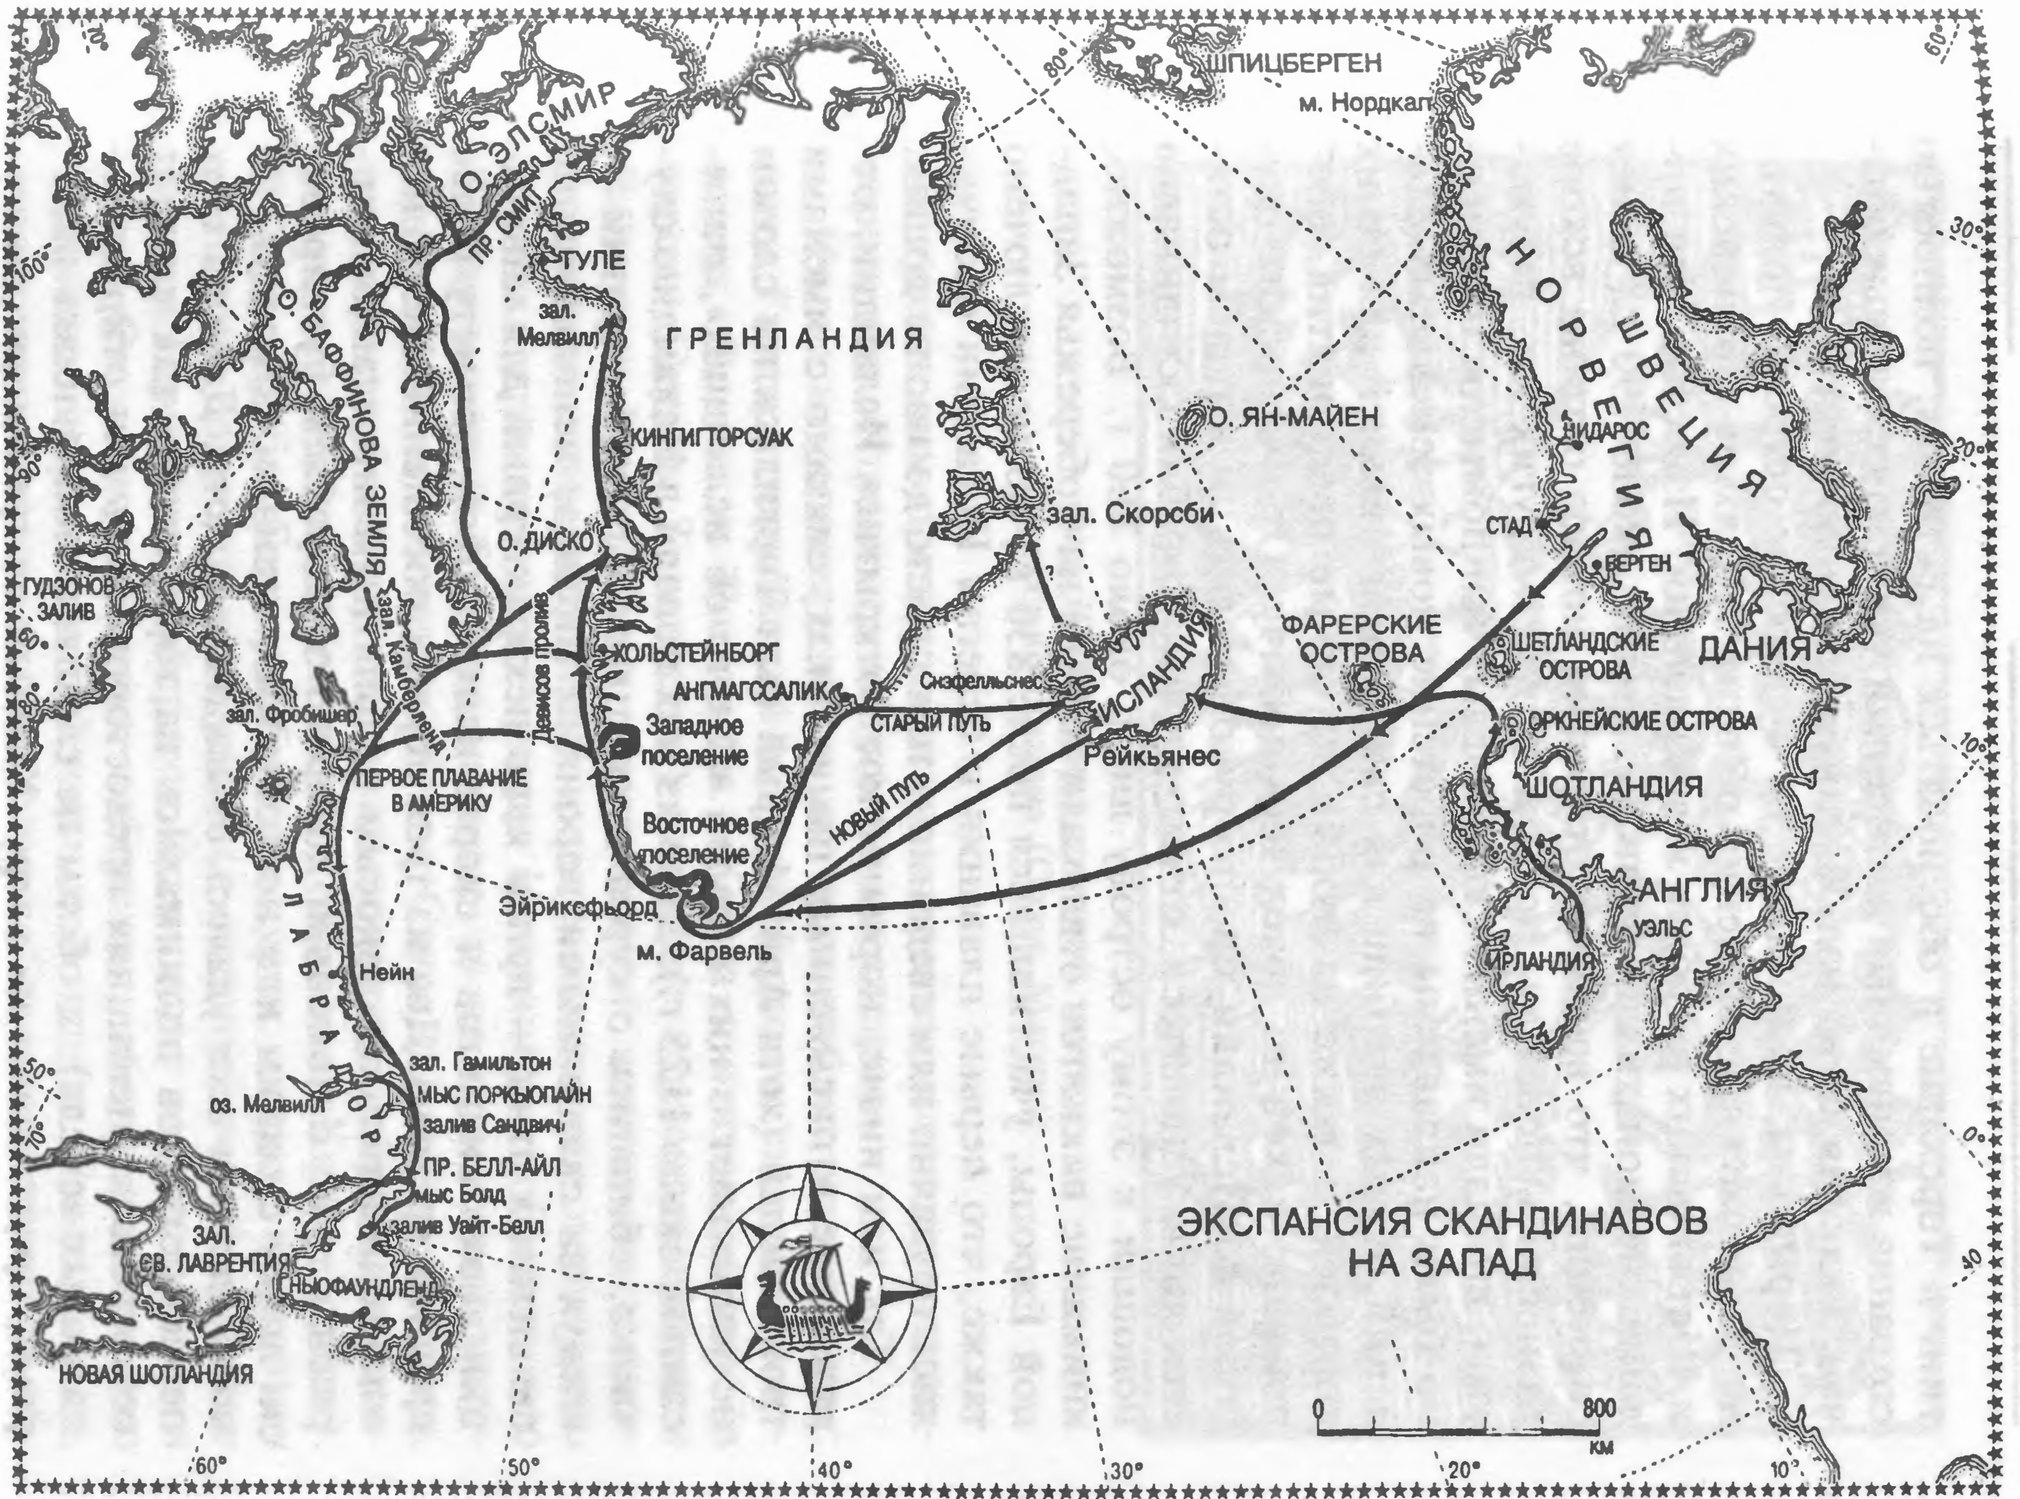 Карта 11. Экспансия скандинавов на запад